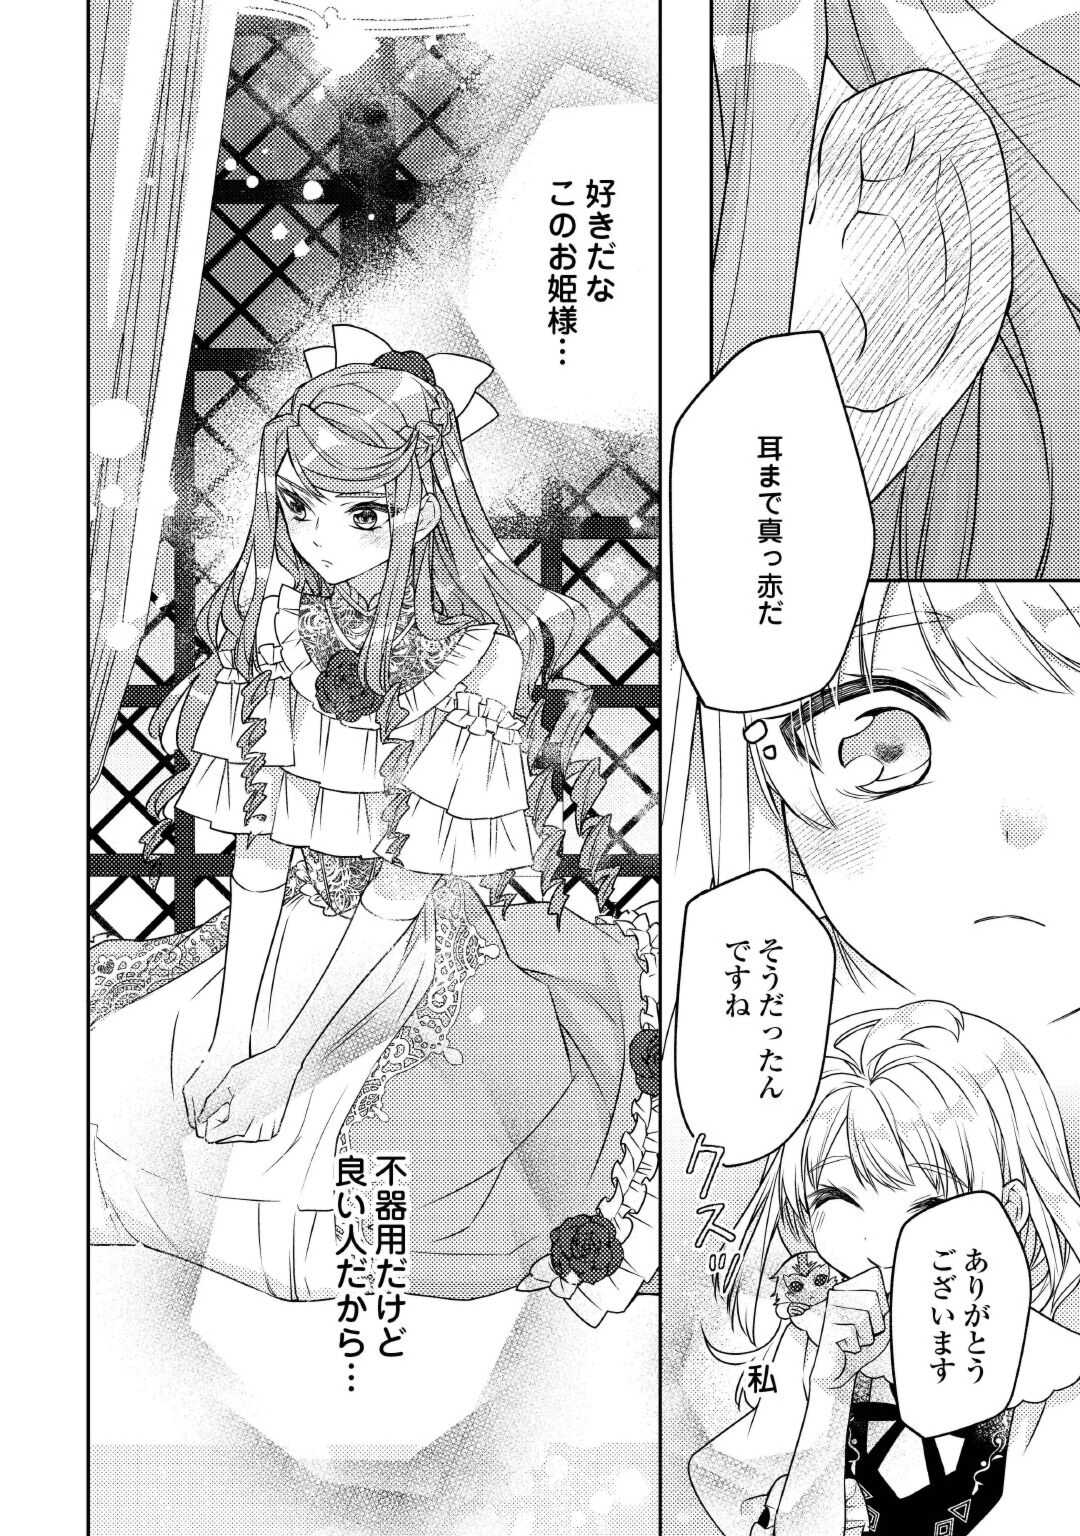 Toaru Chisana Mura No Chi Tona Tanya Ya San - Chapter 18 - Page 10